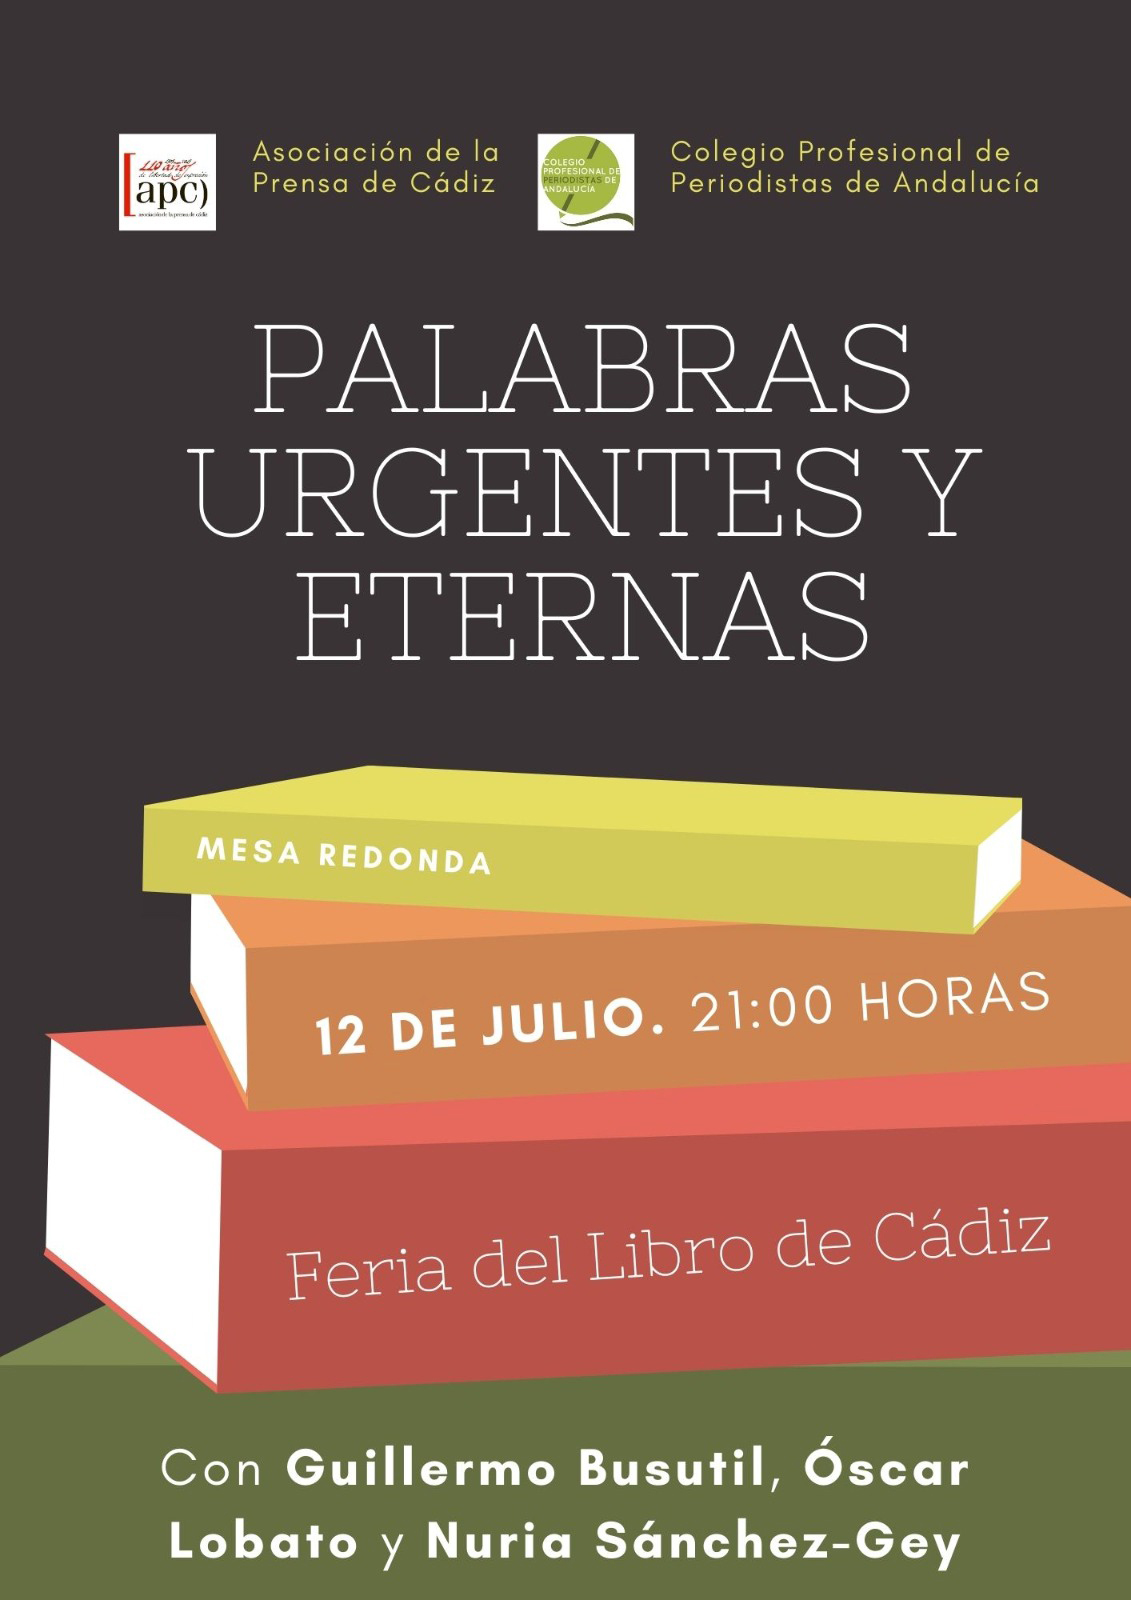 Periodistas que son también escritores protagonizarán una mesa redonda el próximo martes en la Feria del Libro de Cádiz